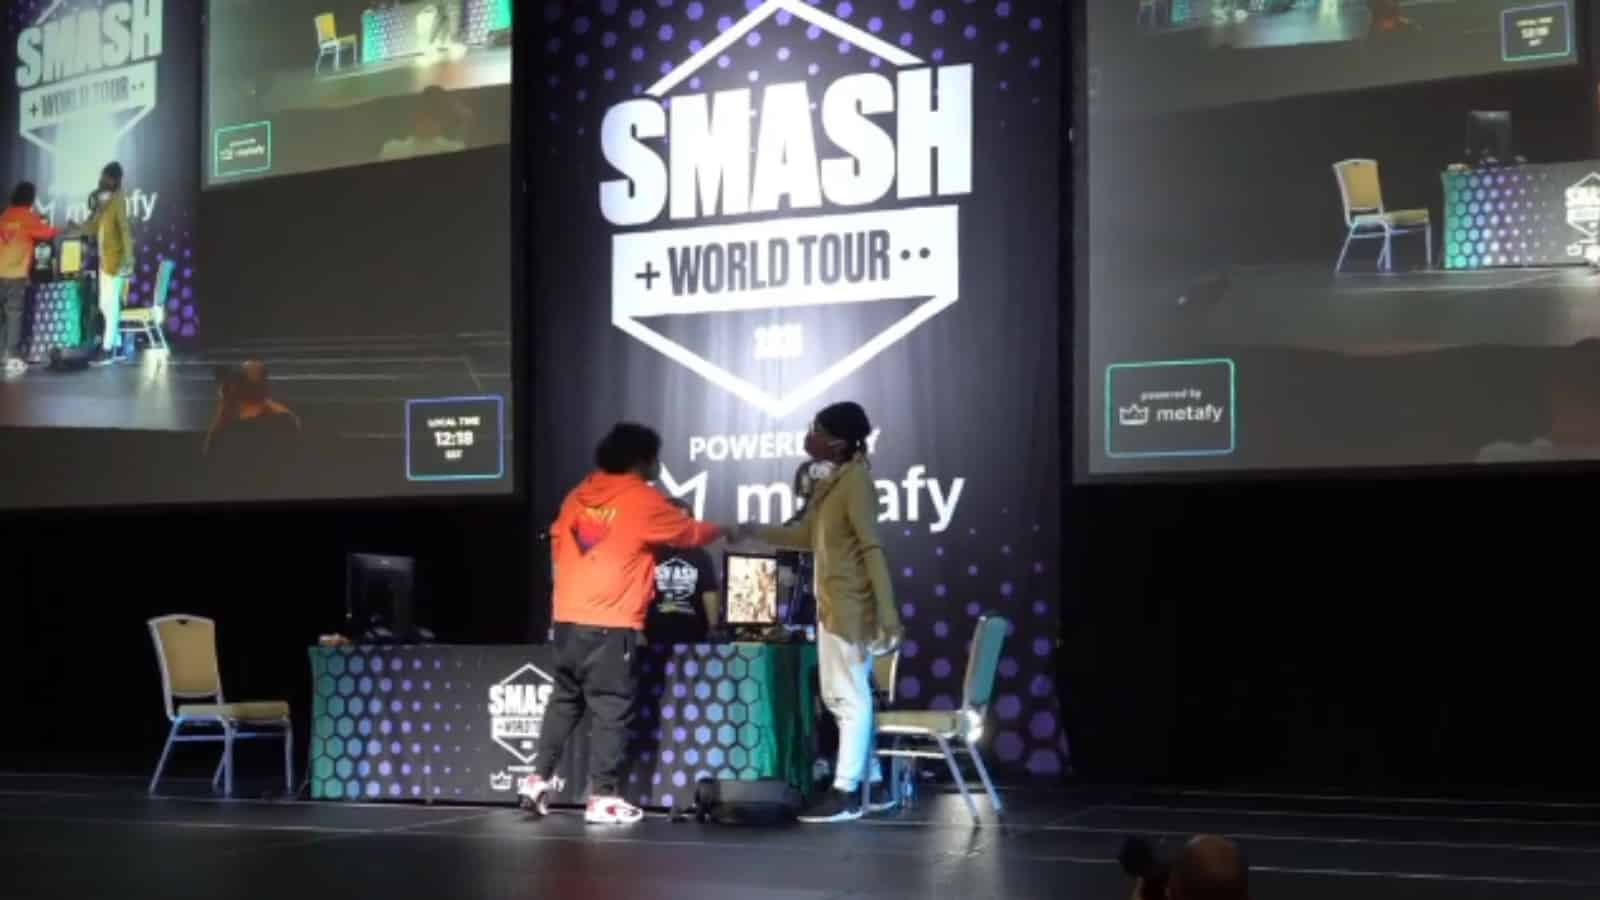 Smash World tour finals